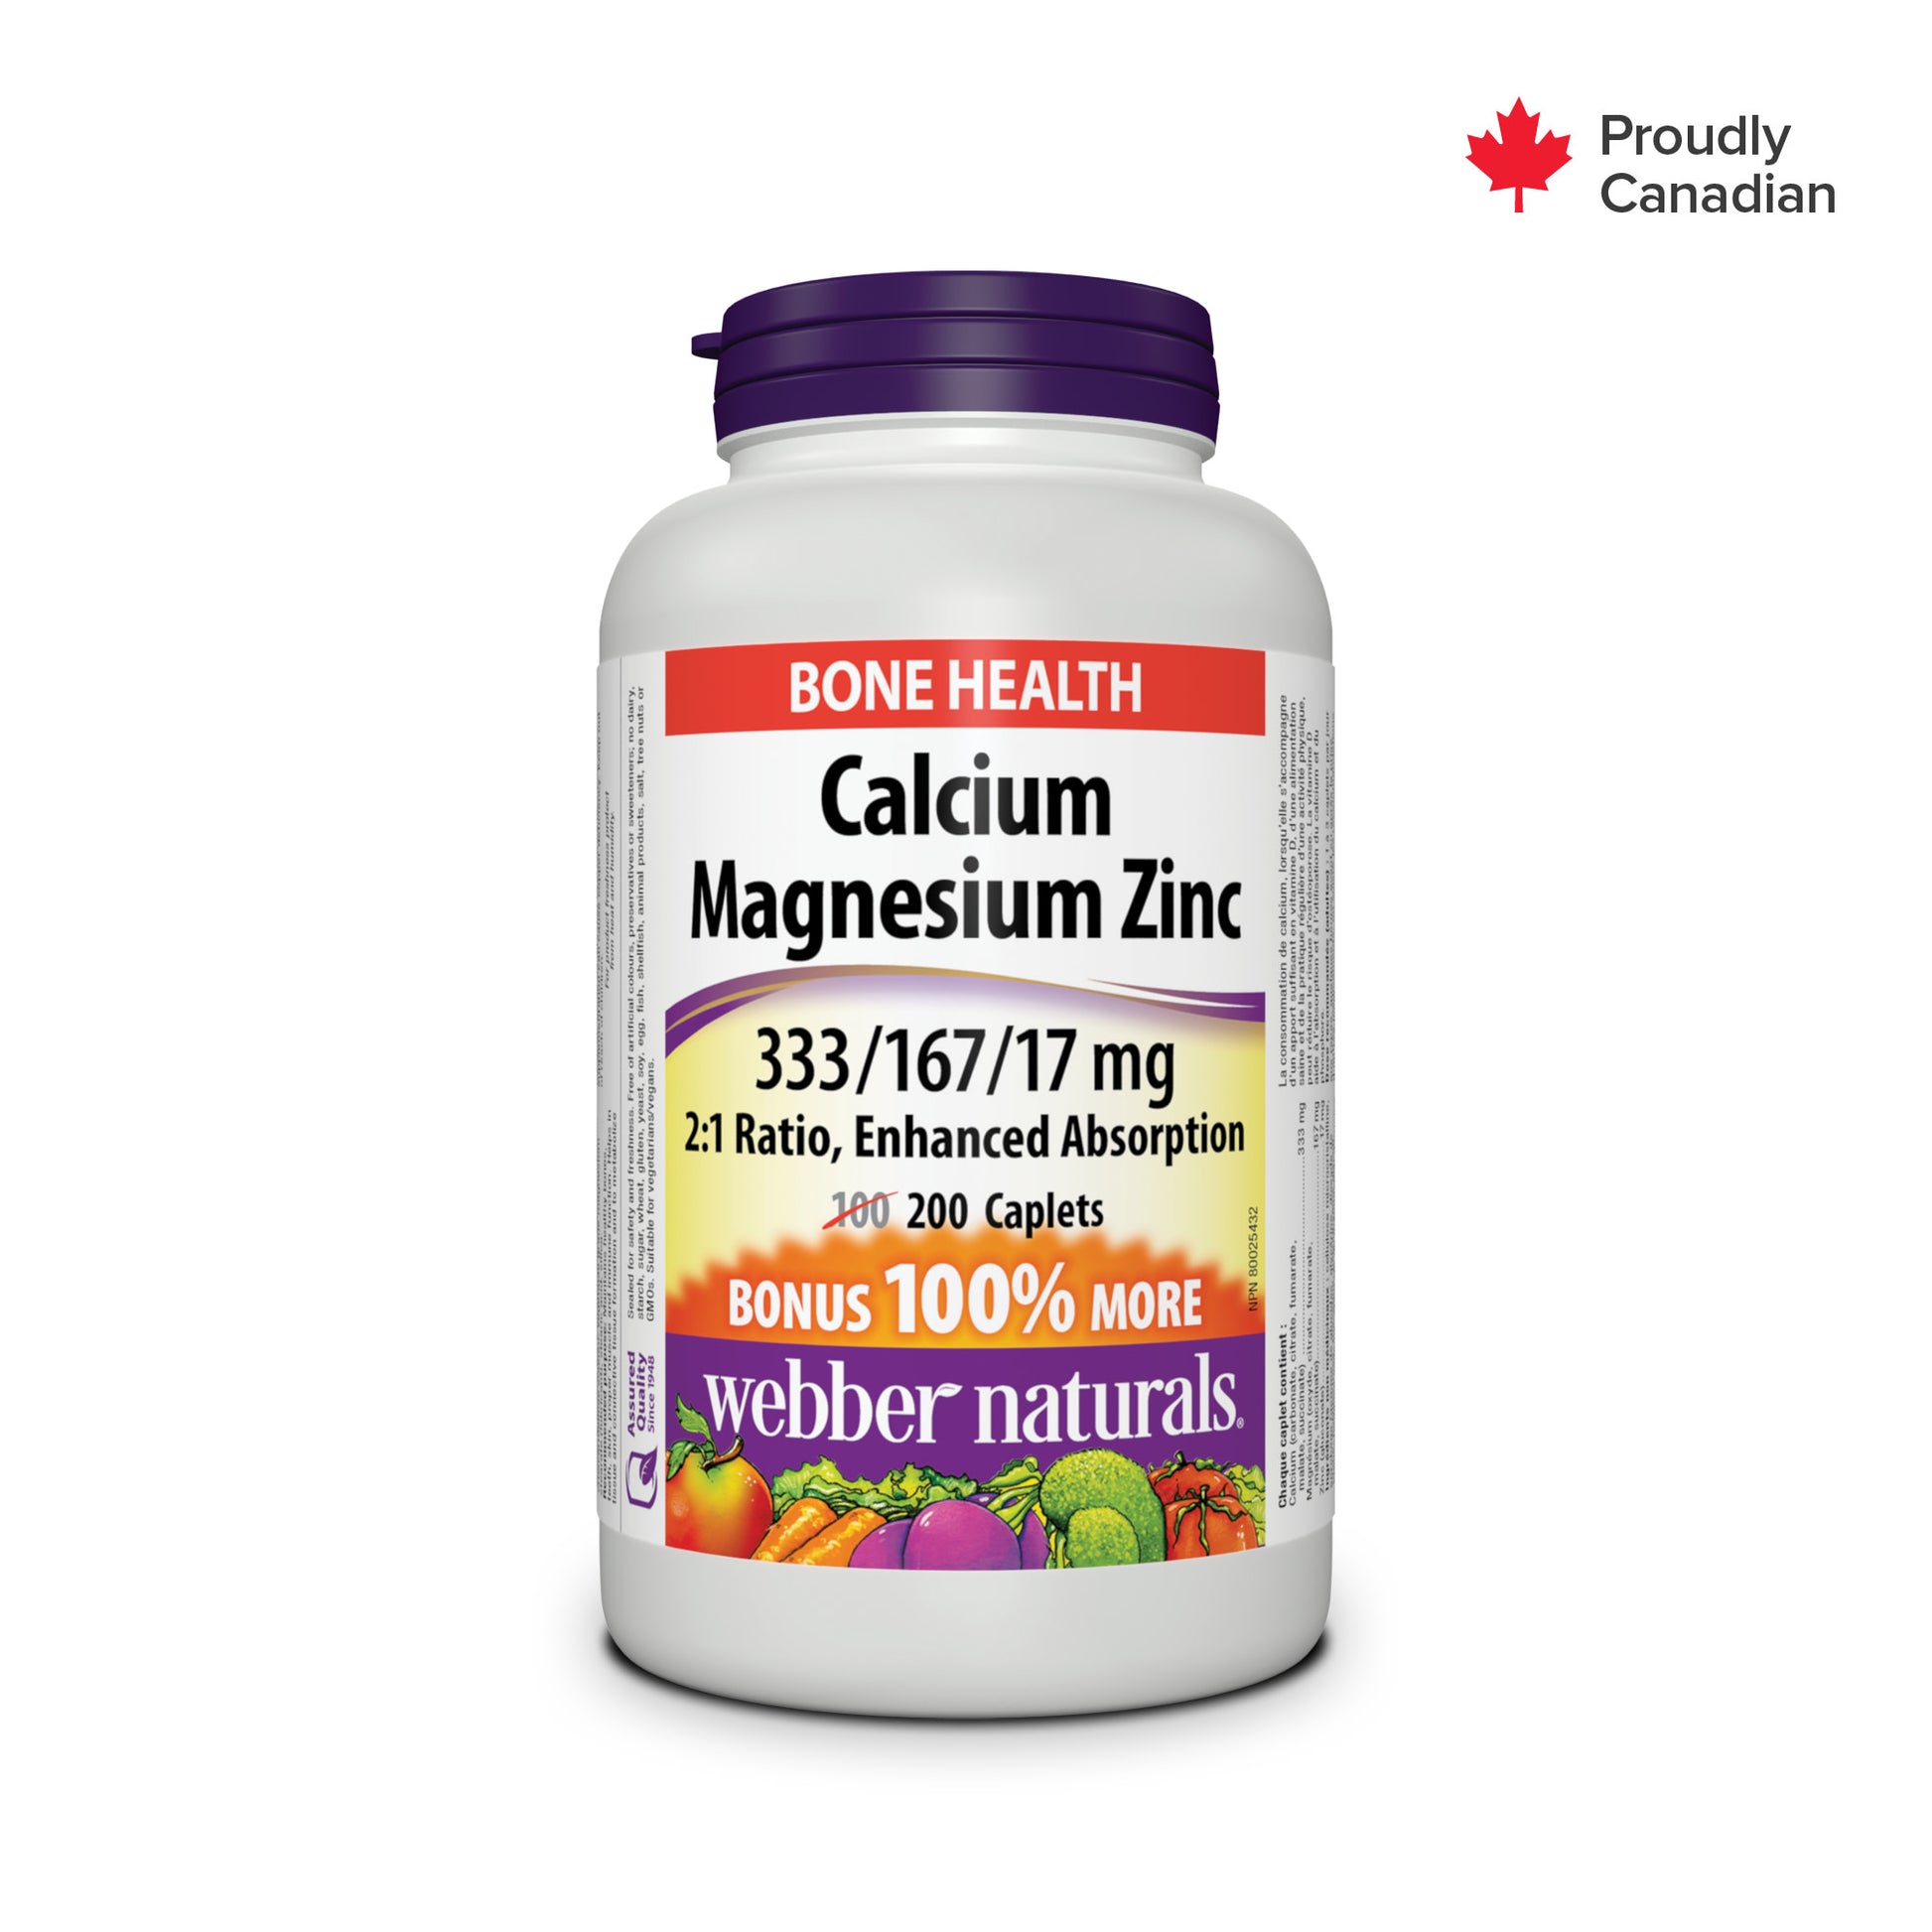 Calcium Magnesium Zinc 2:1 Ratio, Enhanced Absorption 333/167/17 mg for Webber Naturals|v|hi-res|WN3867